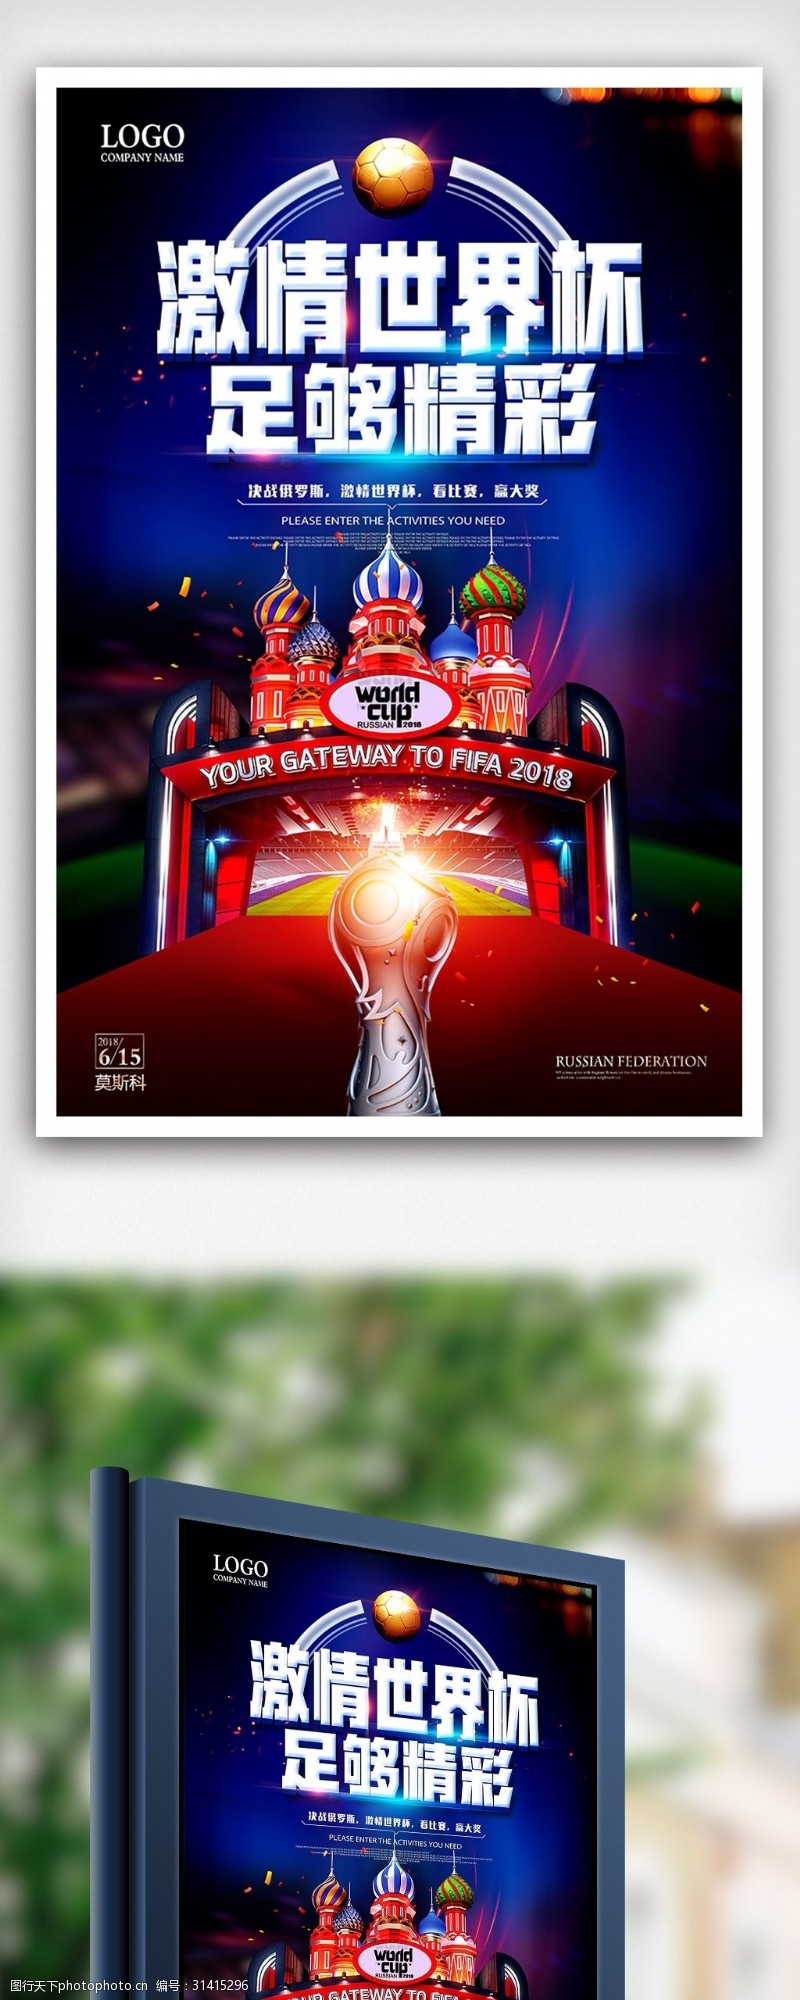 足球图片素材下载激情世界杯俄罗斯世界杯足球比赛海报